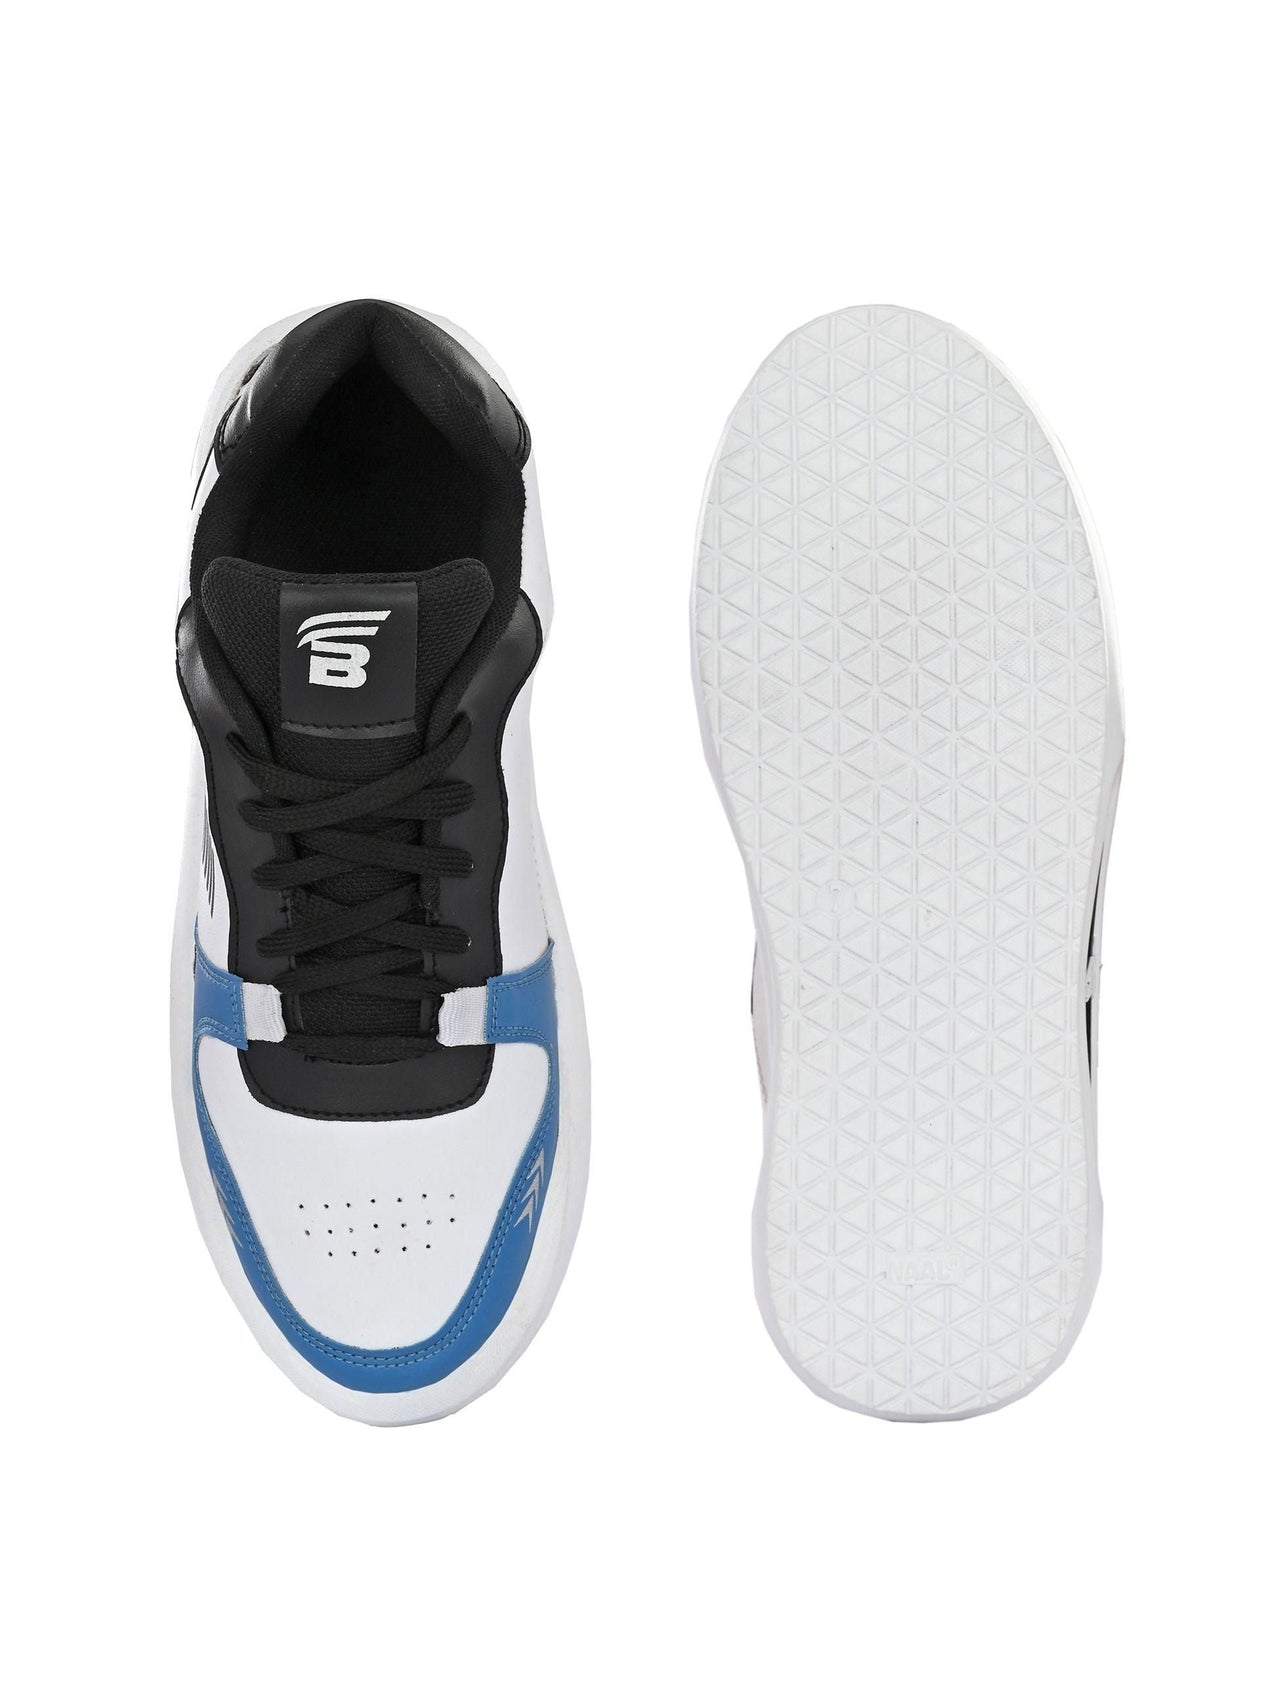 Bucik Men's White Synthetic Leather Lace-Up Sport Shoe